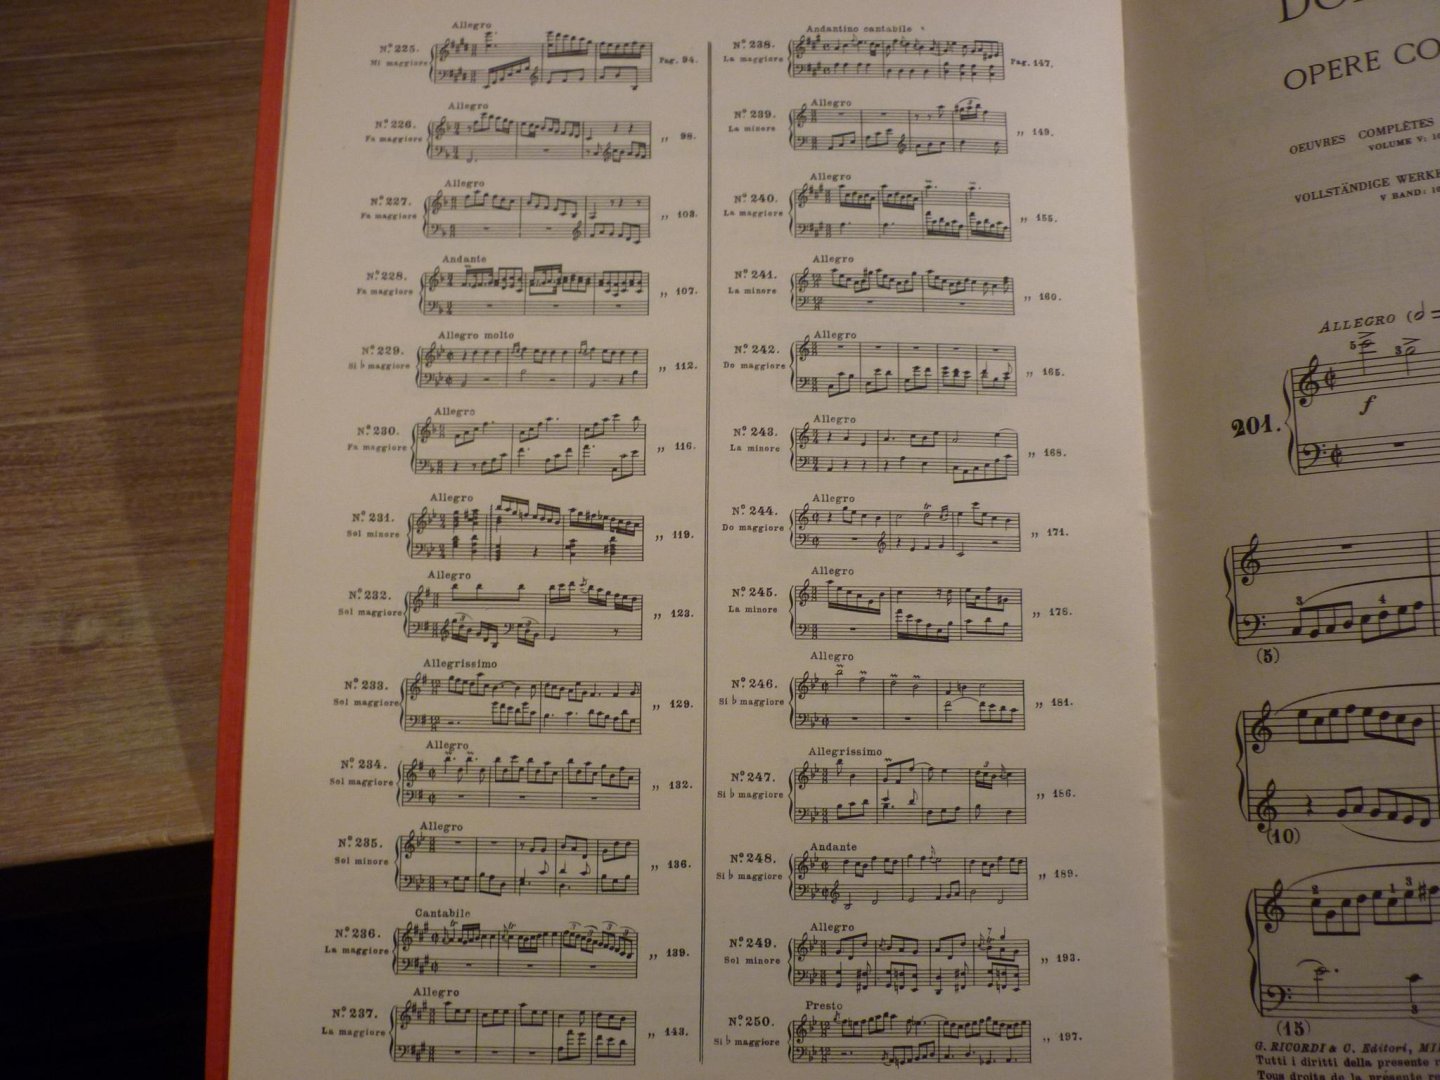 Scarlatti; Domenico (1685–1757) - Opere Complete Per Clav. Vol. 5; Suites No. 201 - 250; Voor Klavecimbel (of piano); Editor: Alessandro Longo